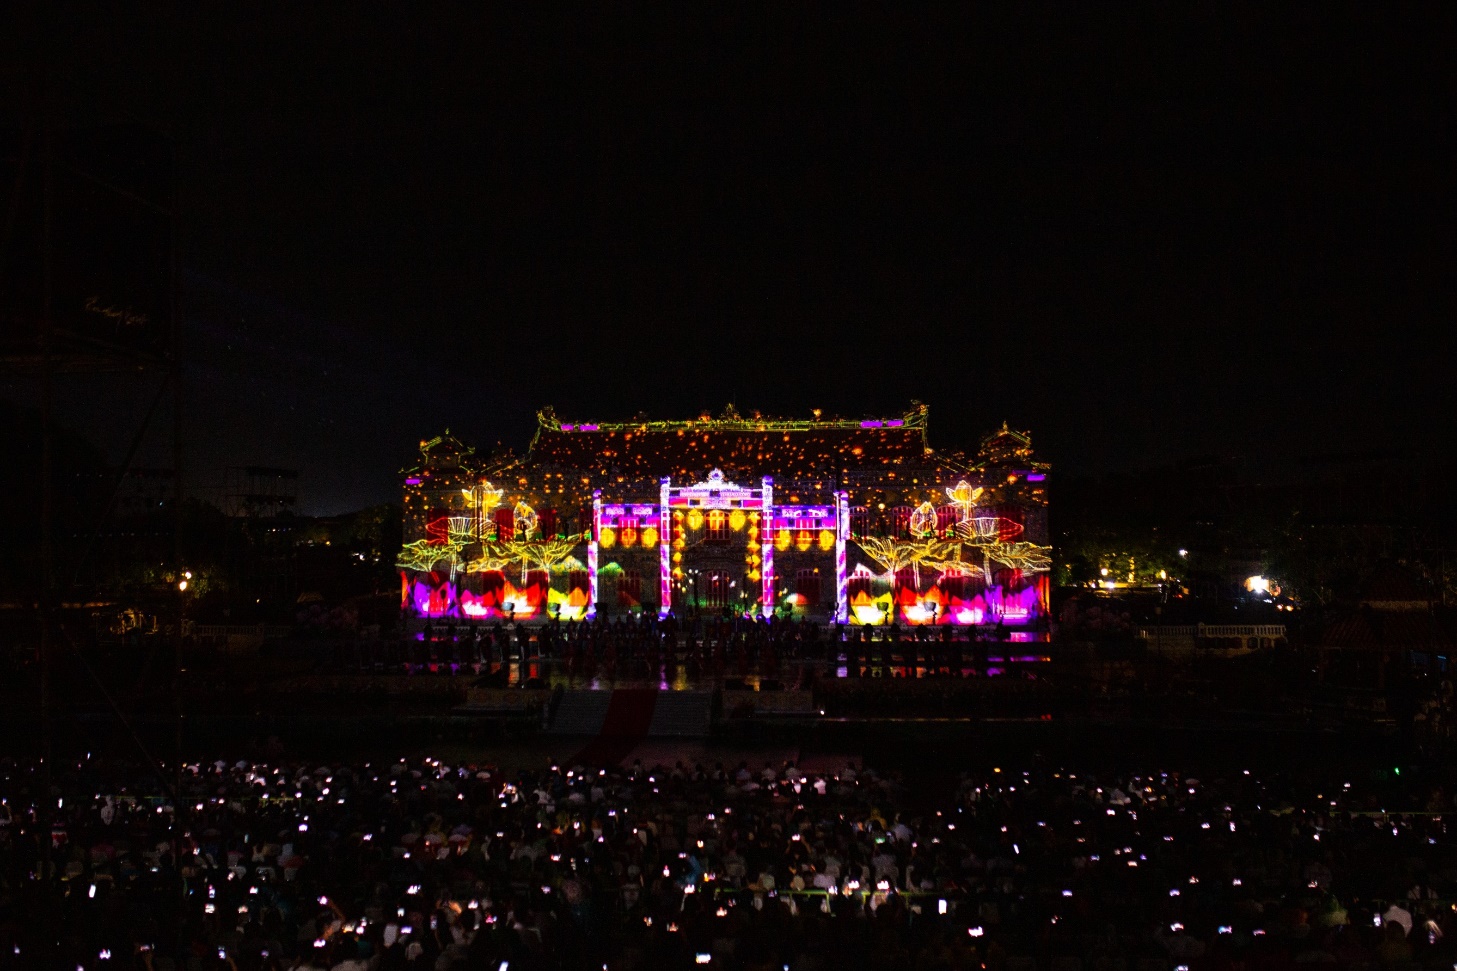 Chiêm ngưỡng cung điện triệu đô lộng lẫy trong đêm khai mạc Tuần lễ Festival Huế - 11